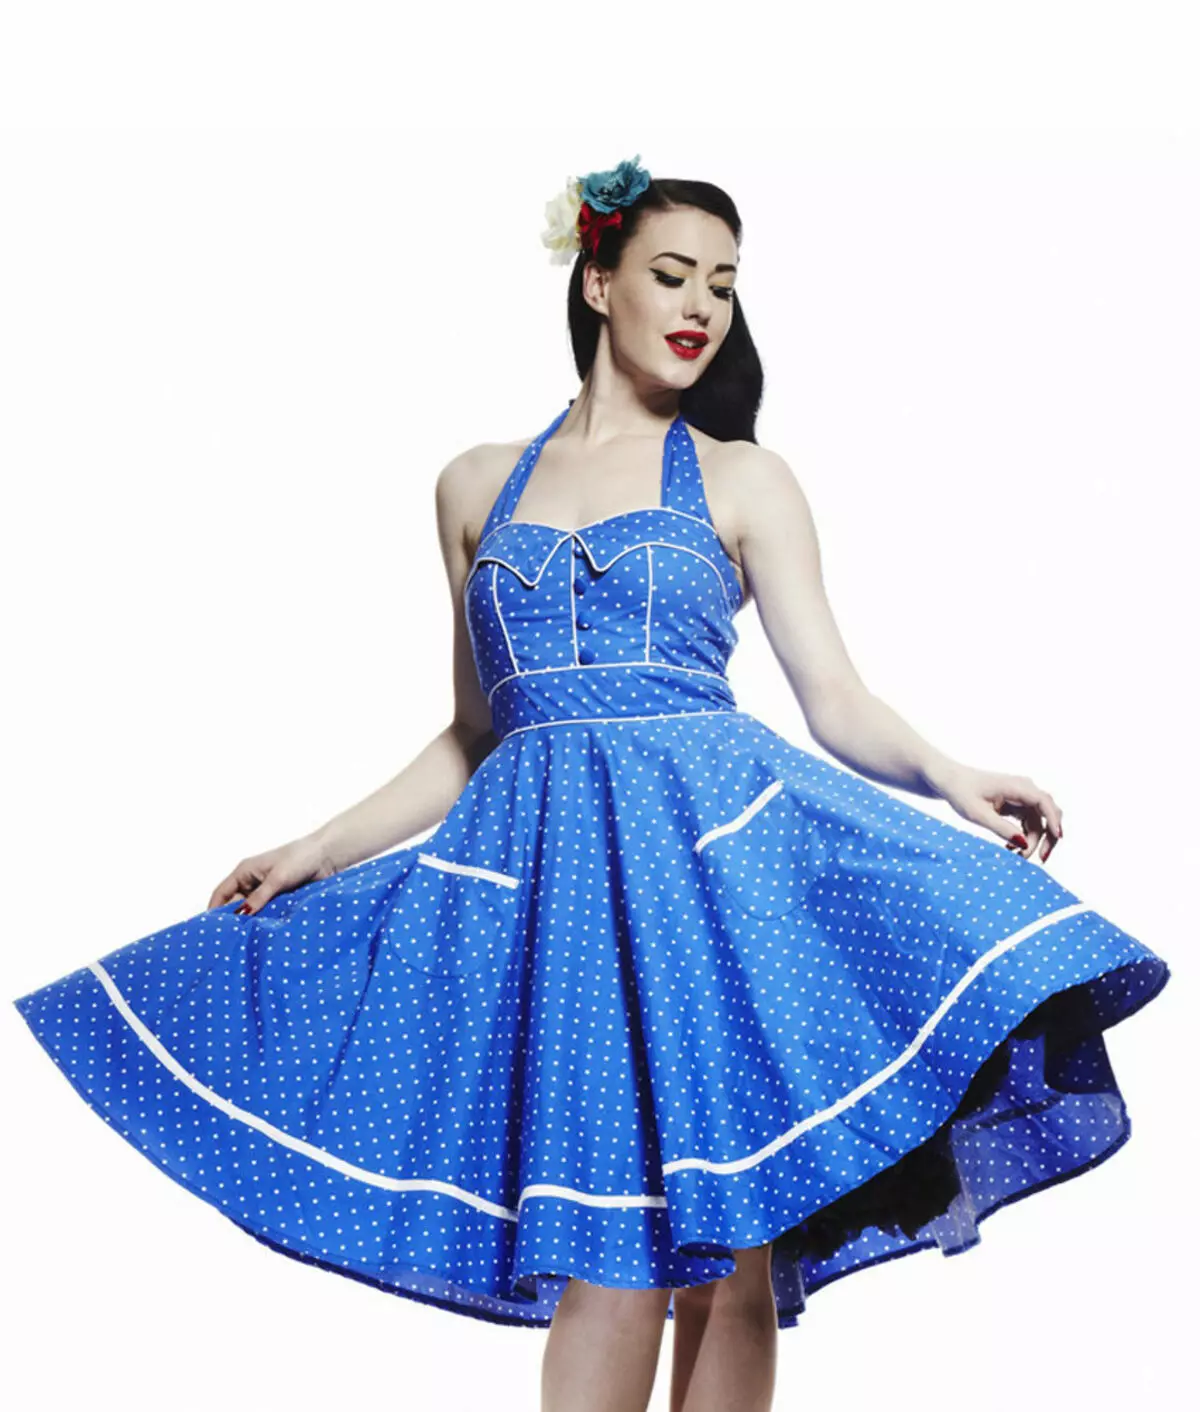 Blue dress in white polka dot in retro style